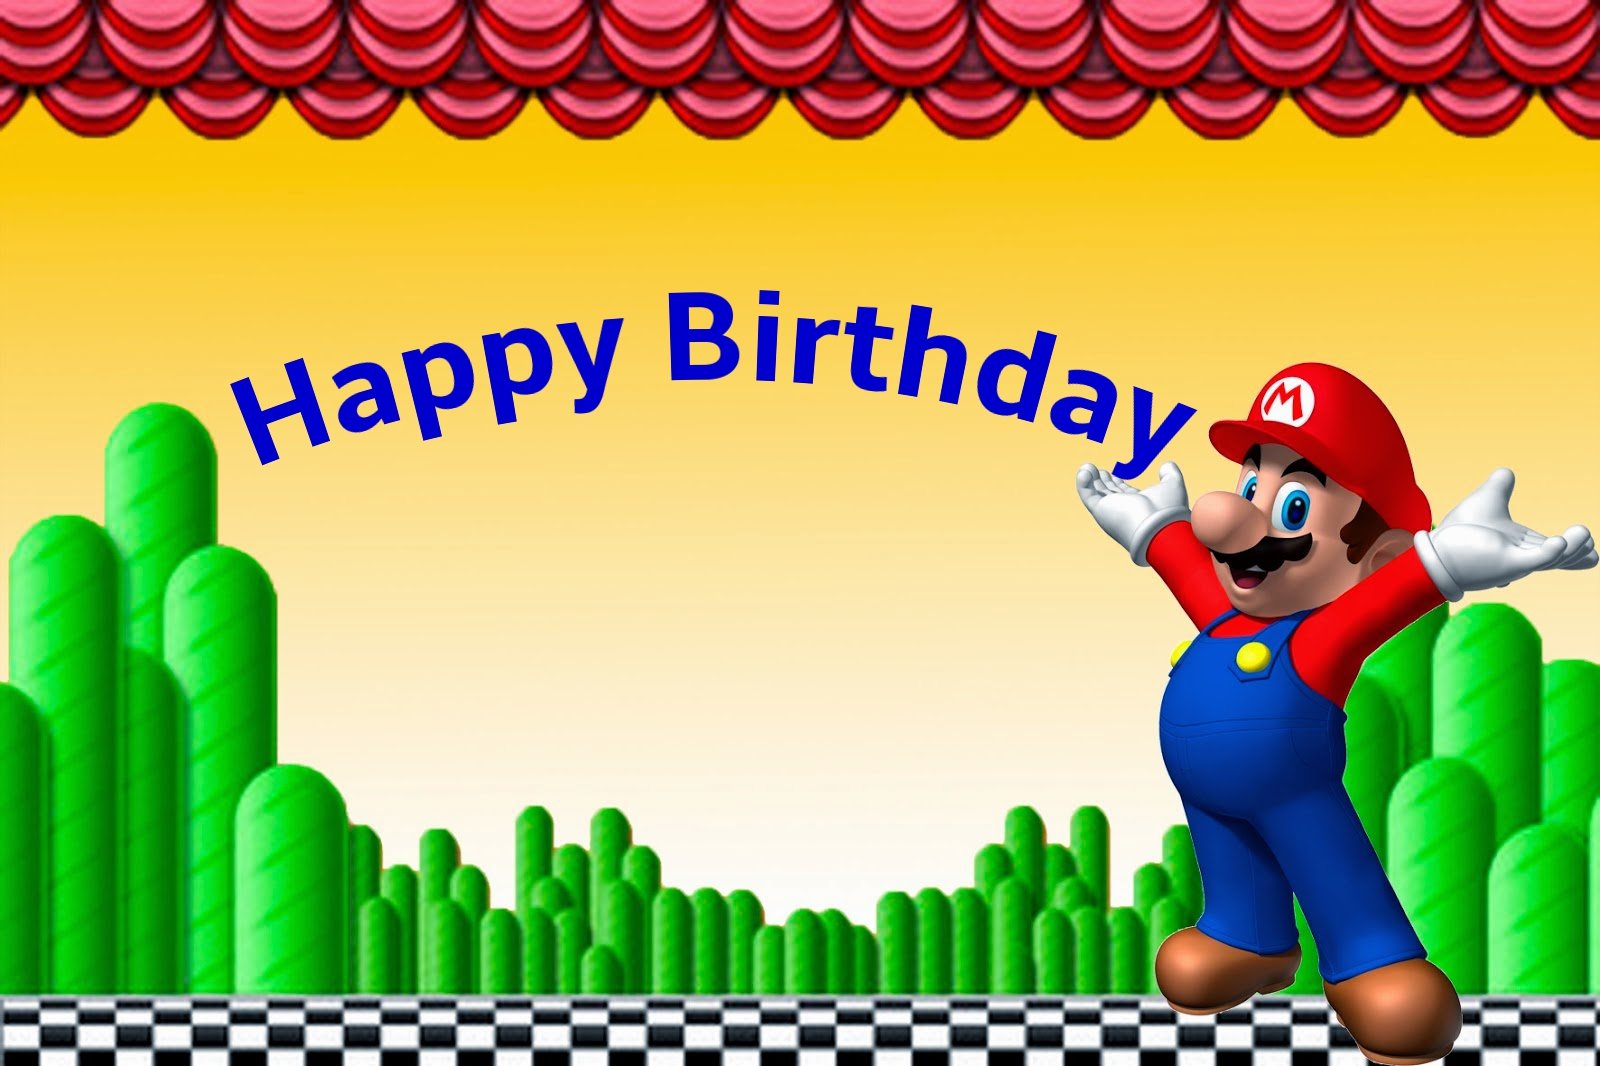 Mario and Luigi birthday cards